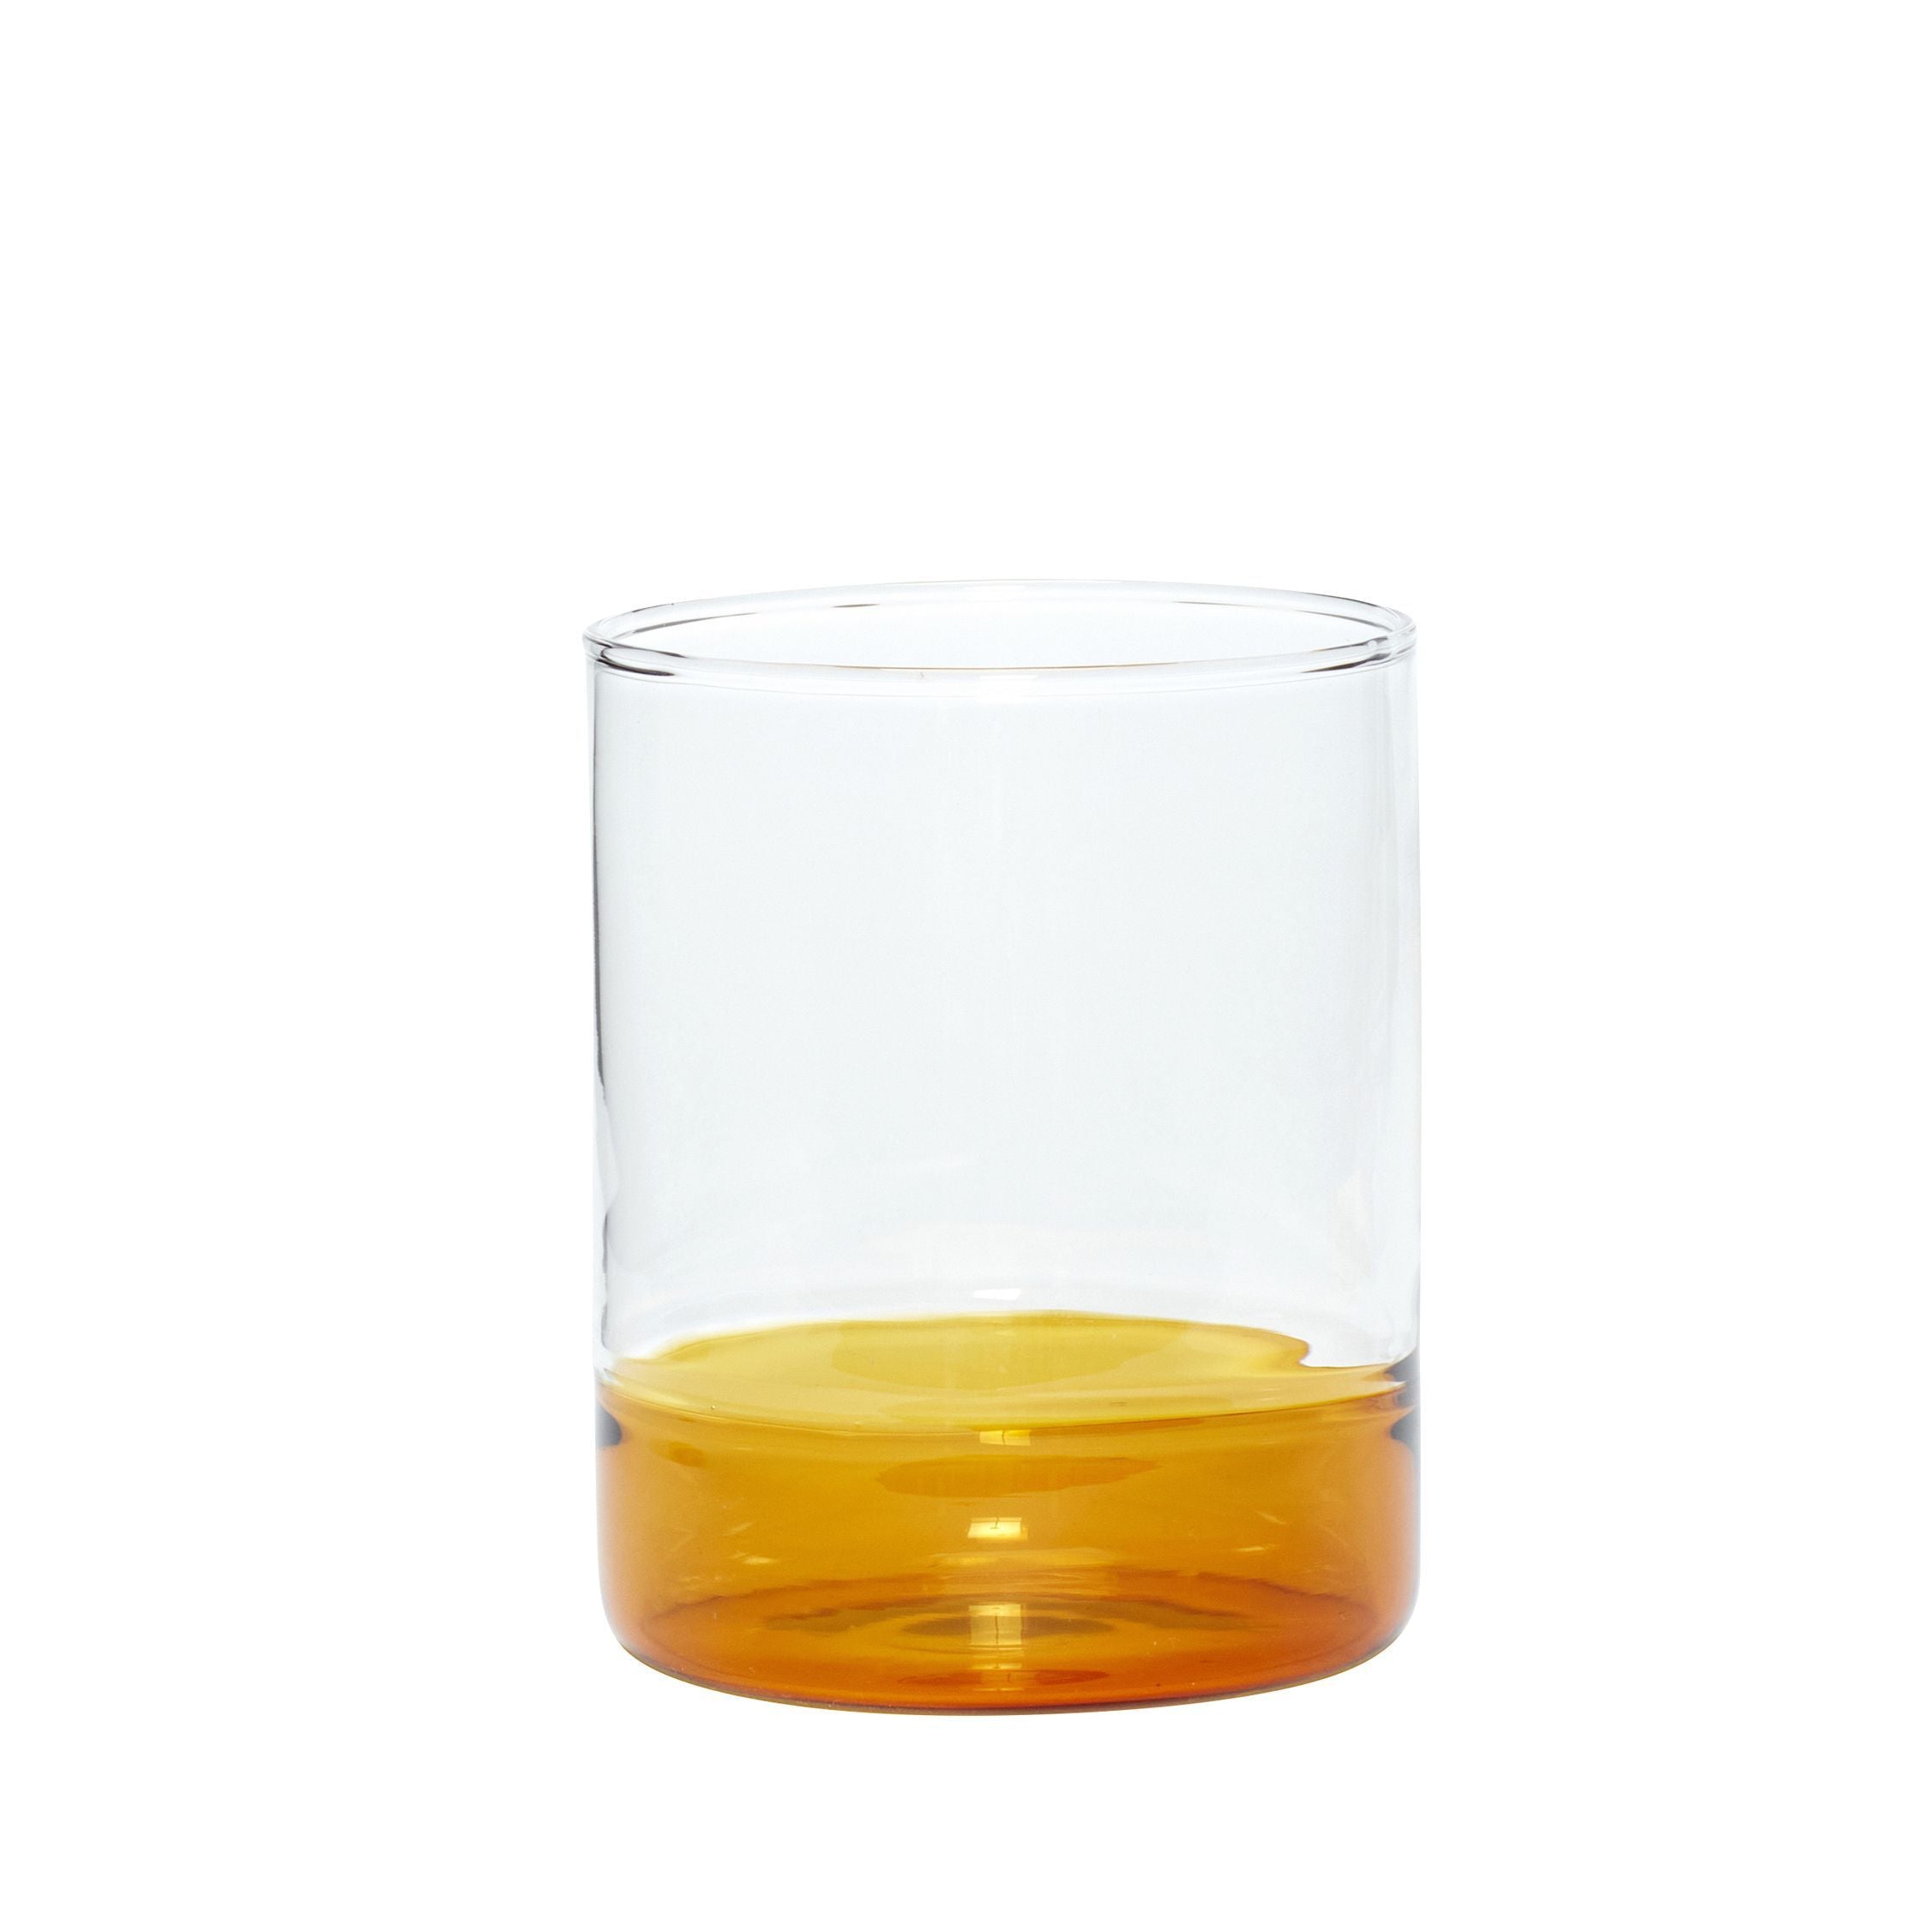 Hübsch Kiosk Drinking Glass Glass Clear/Amber